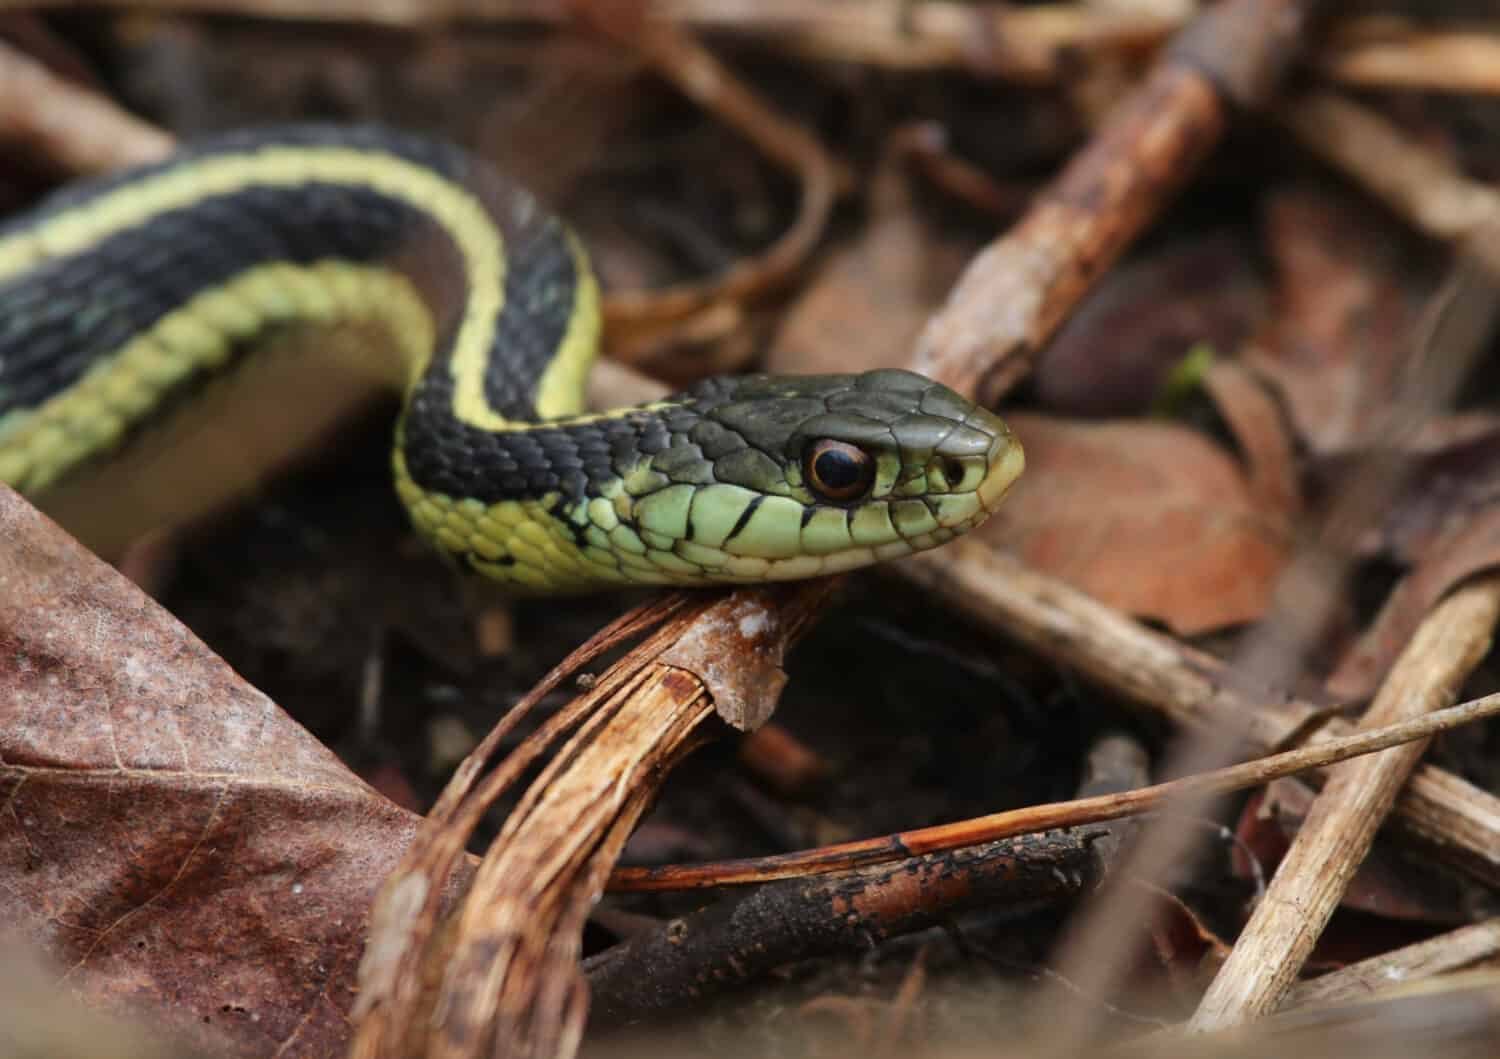 Un'immagine ravvicinata di un serpente giarrettiera verde con strisce nere sul corpo e sul viso.